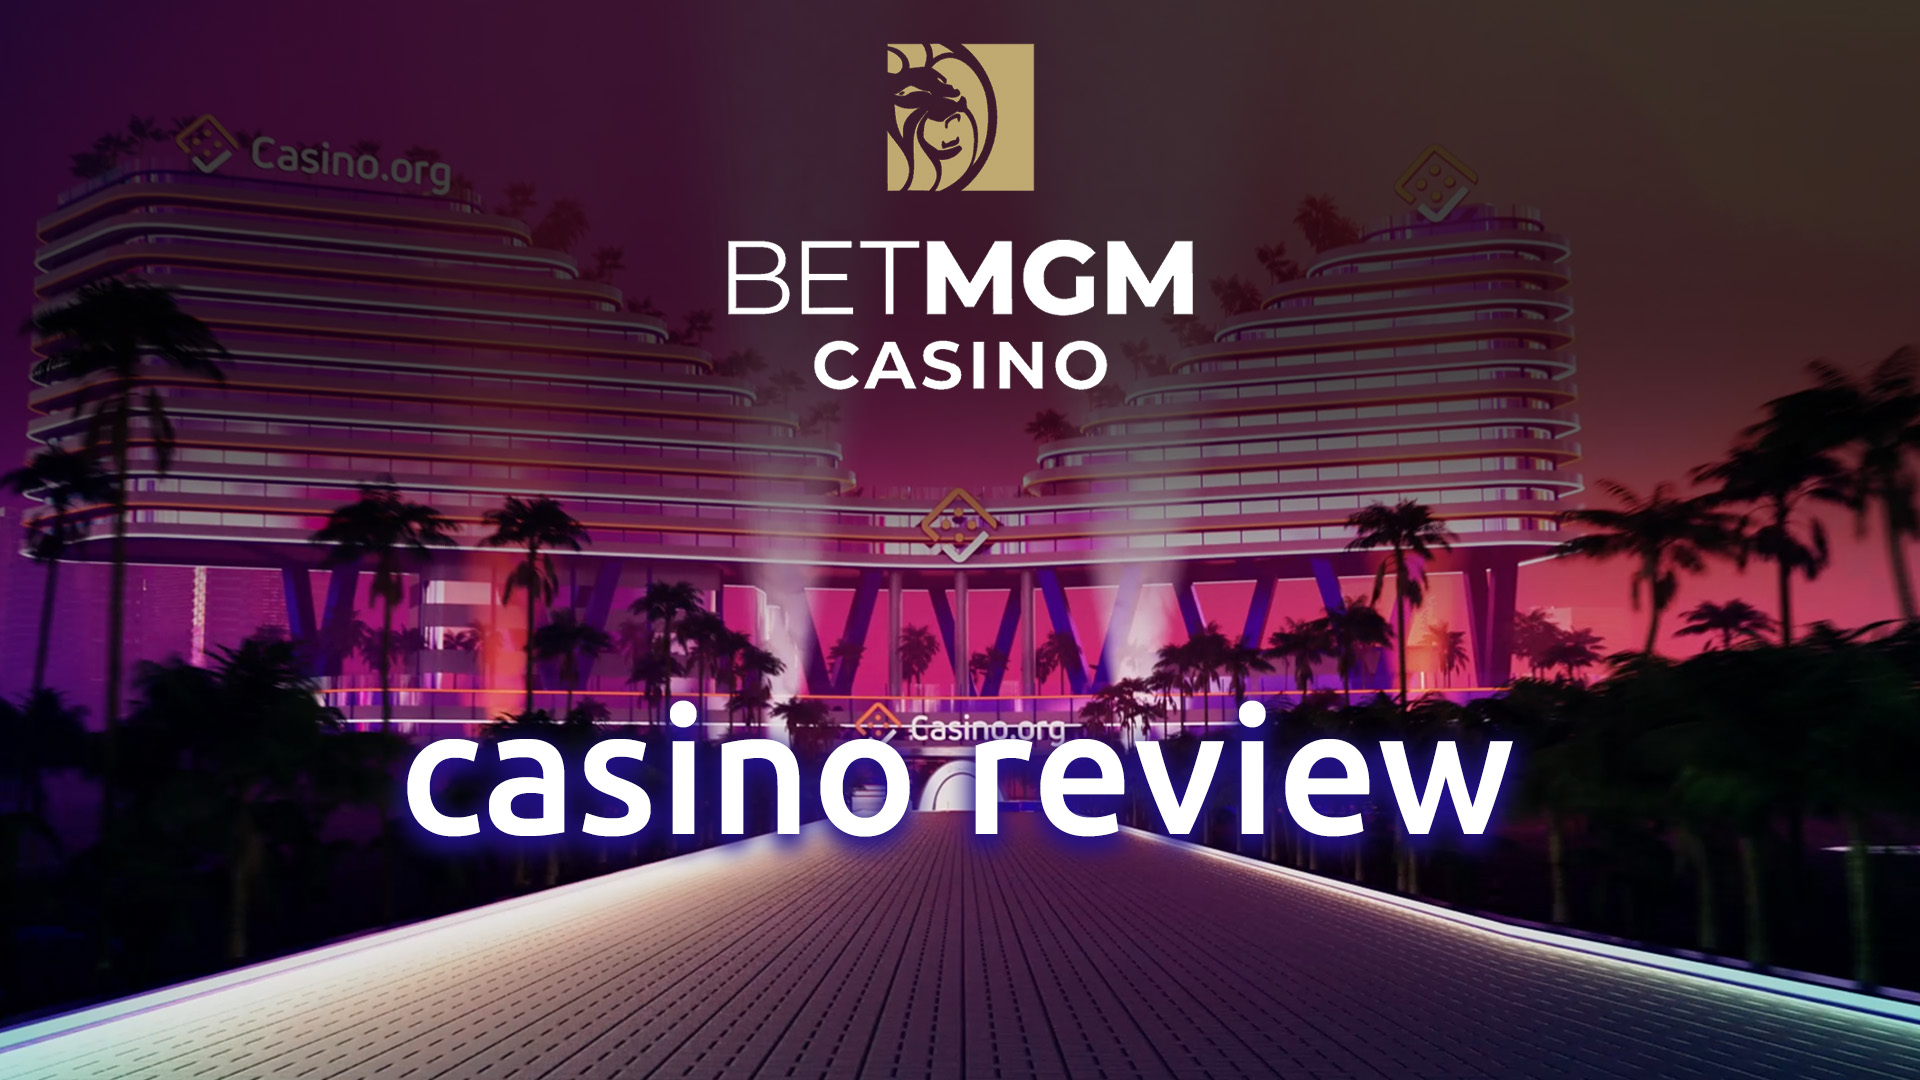 BetMGM Casino Review: Rating